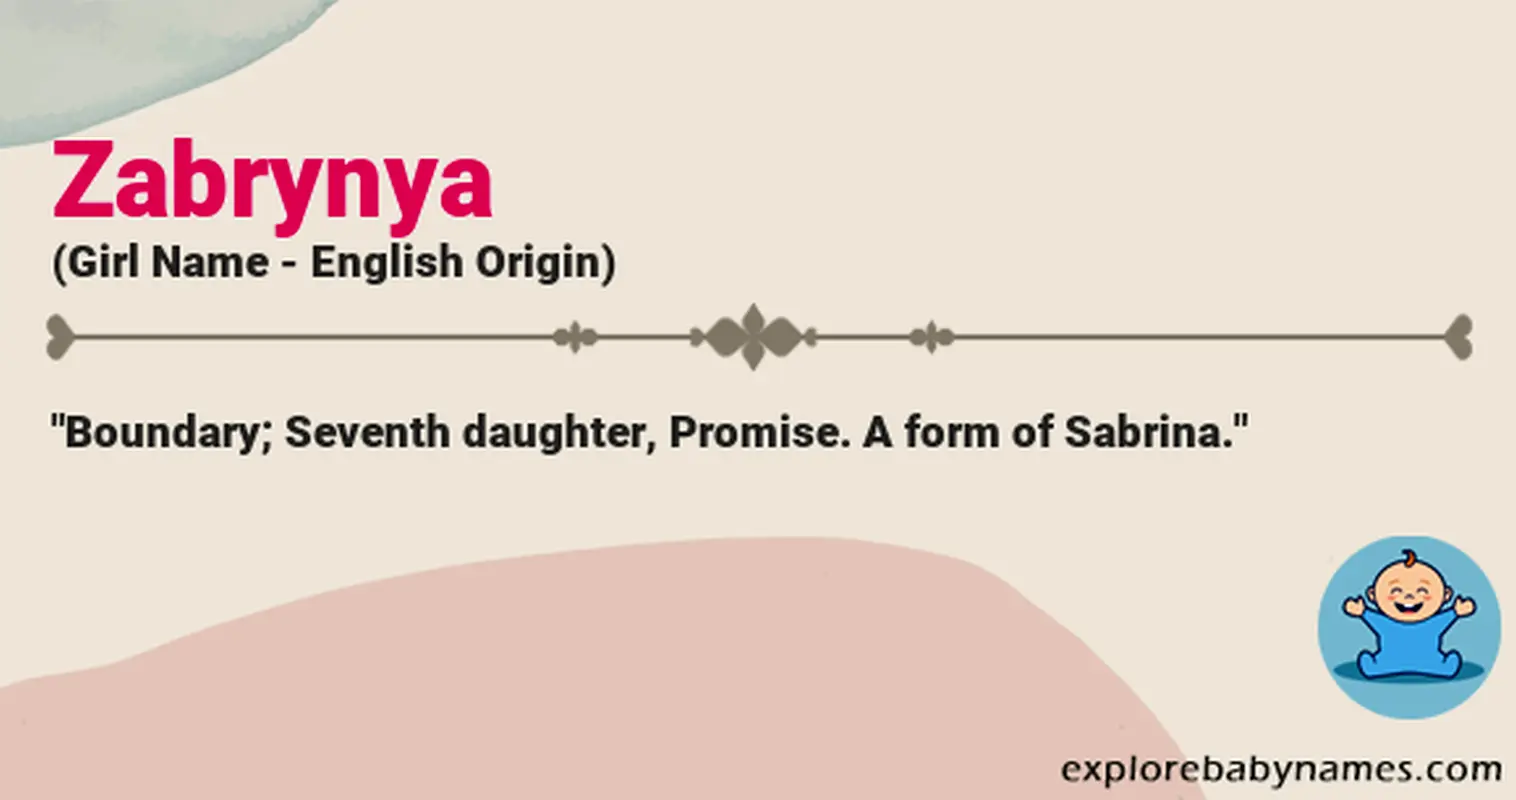 Meaning of Zabrynya